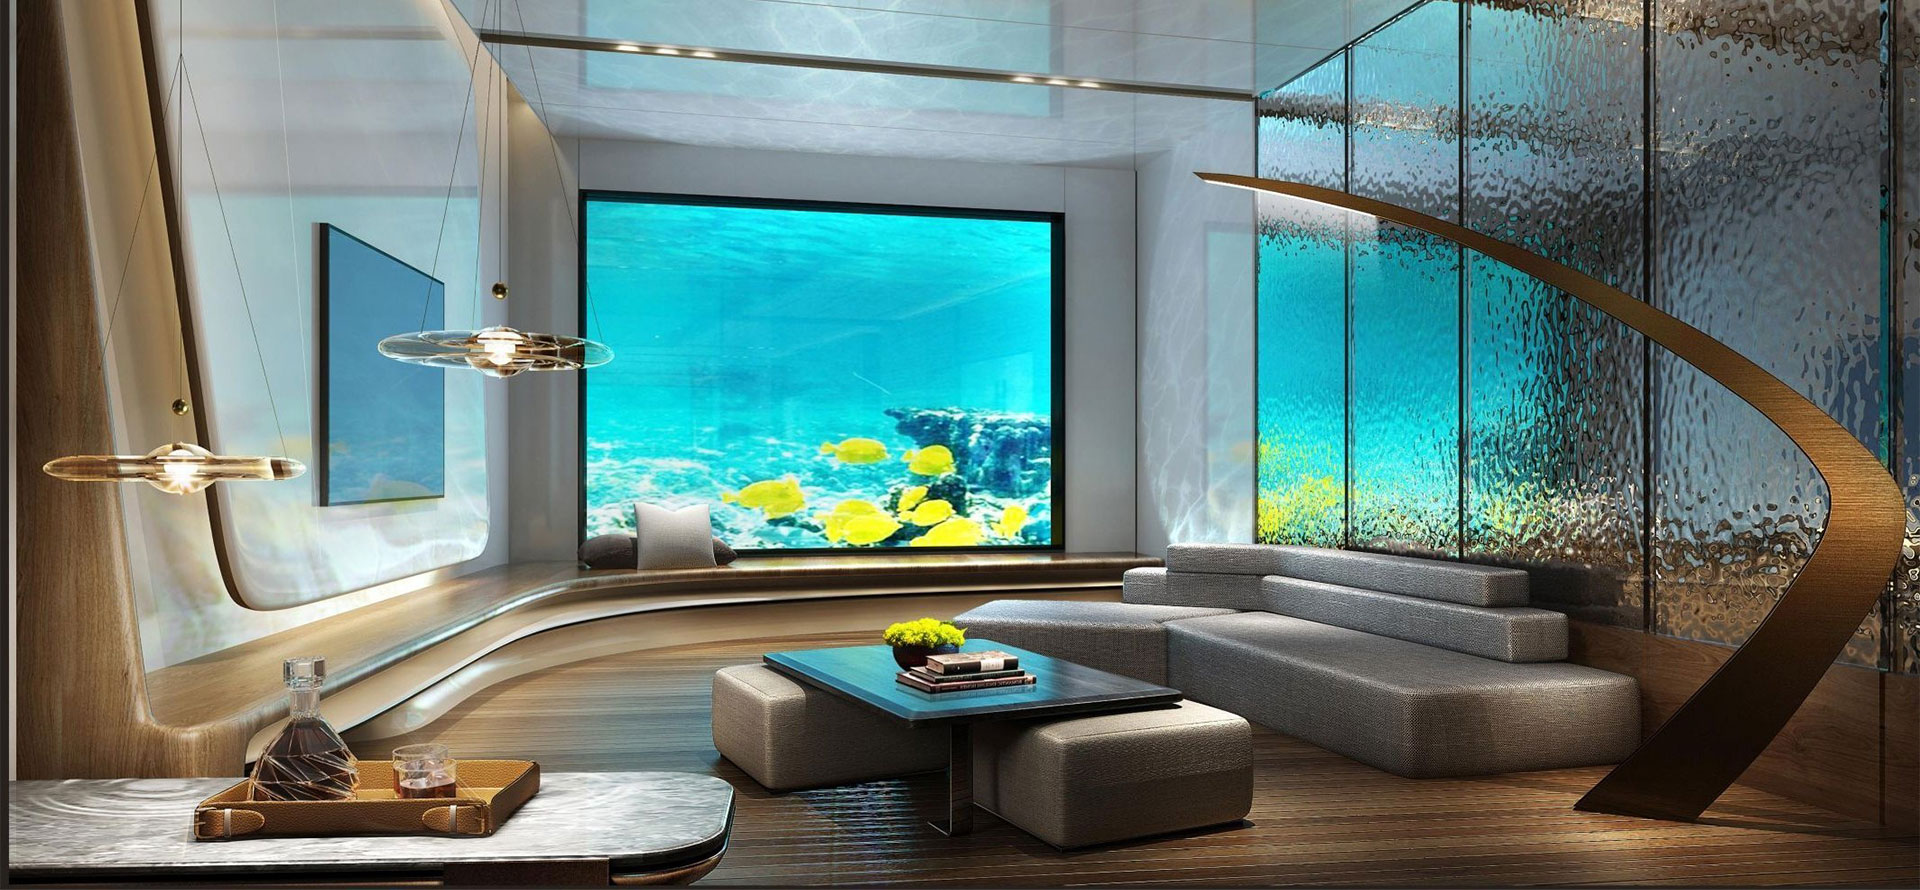 Miami Underwater Hotels.